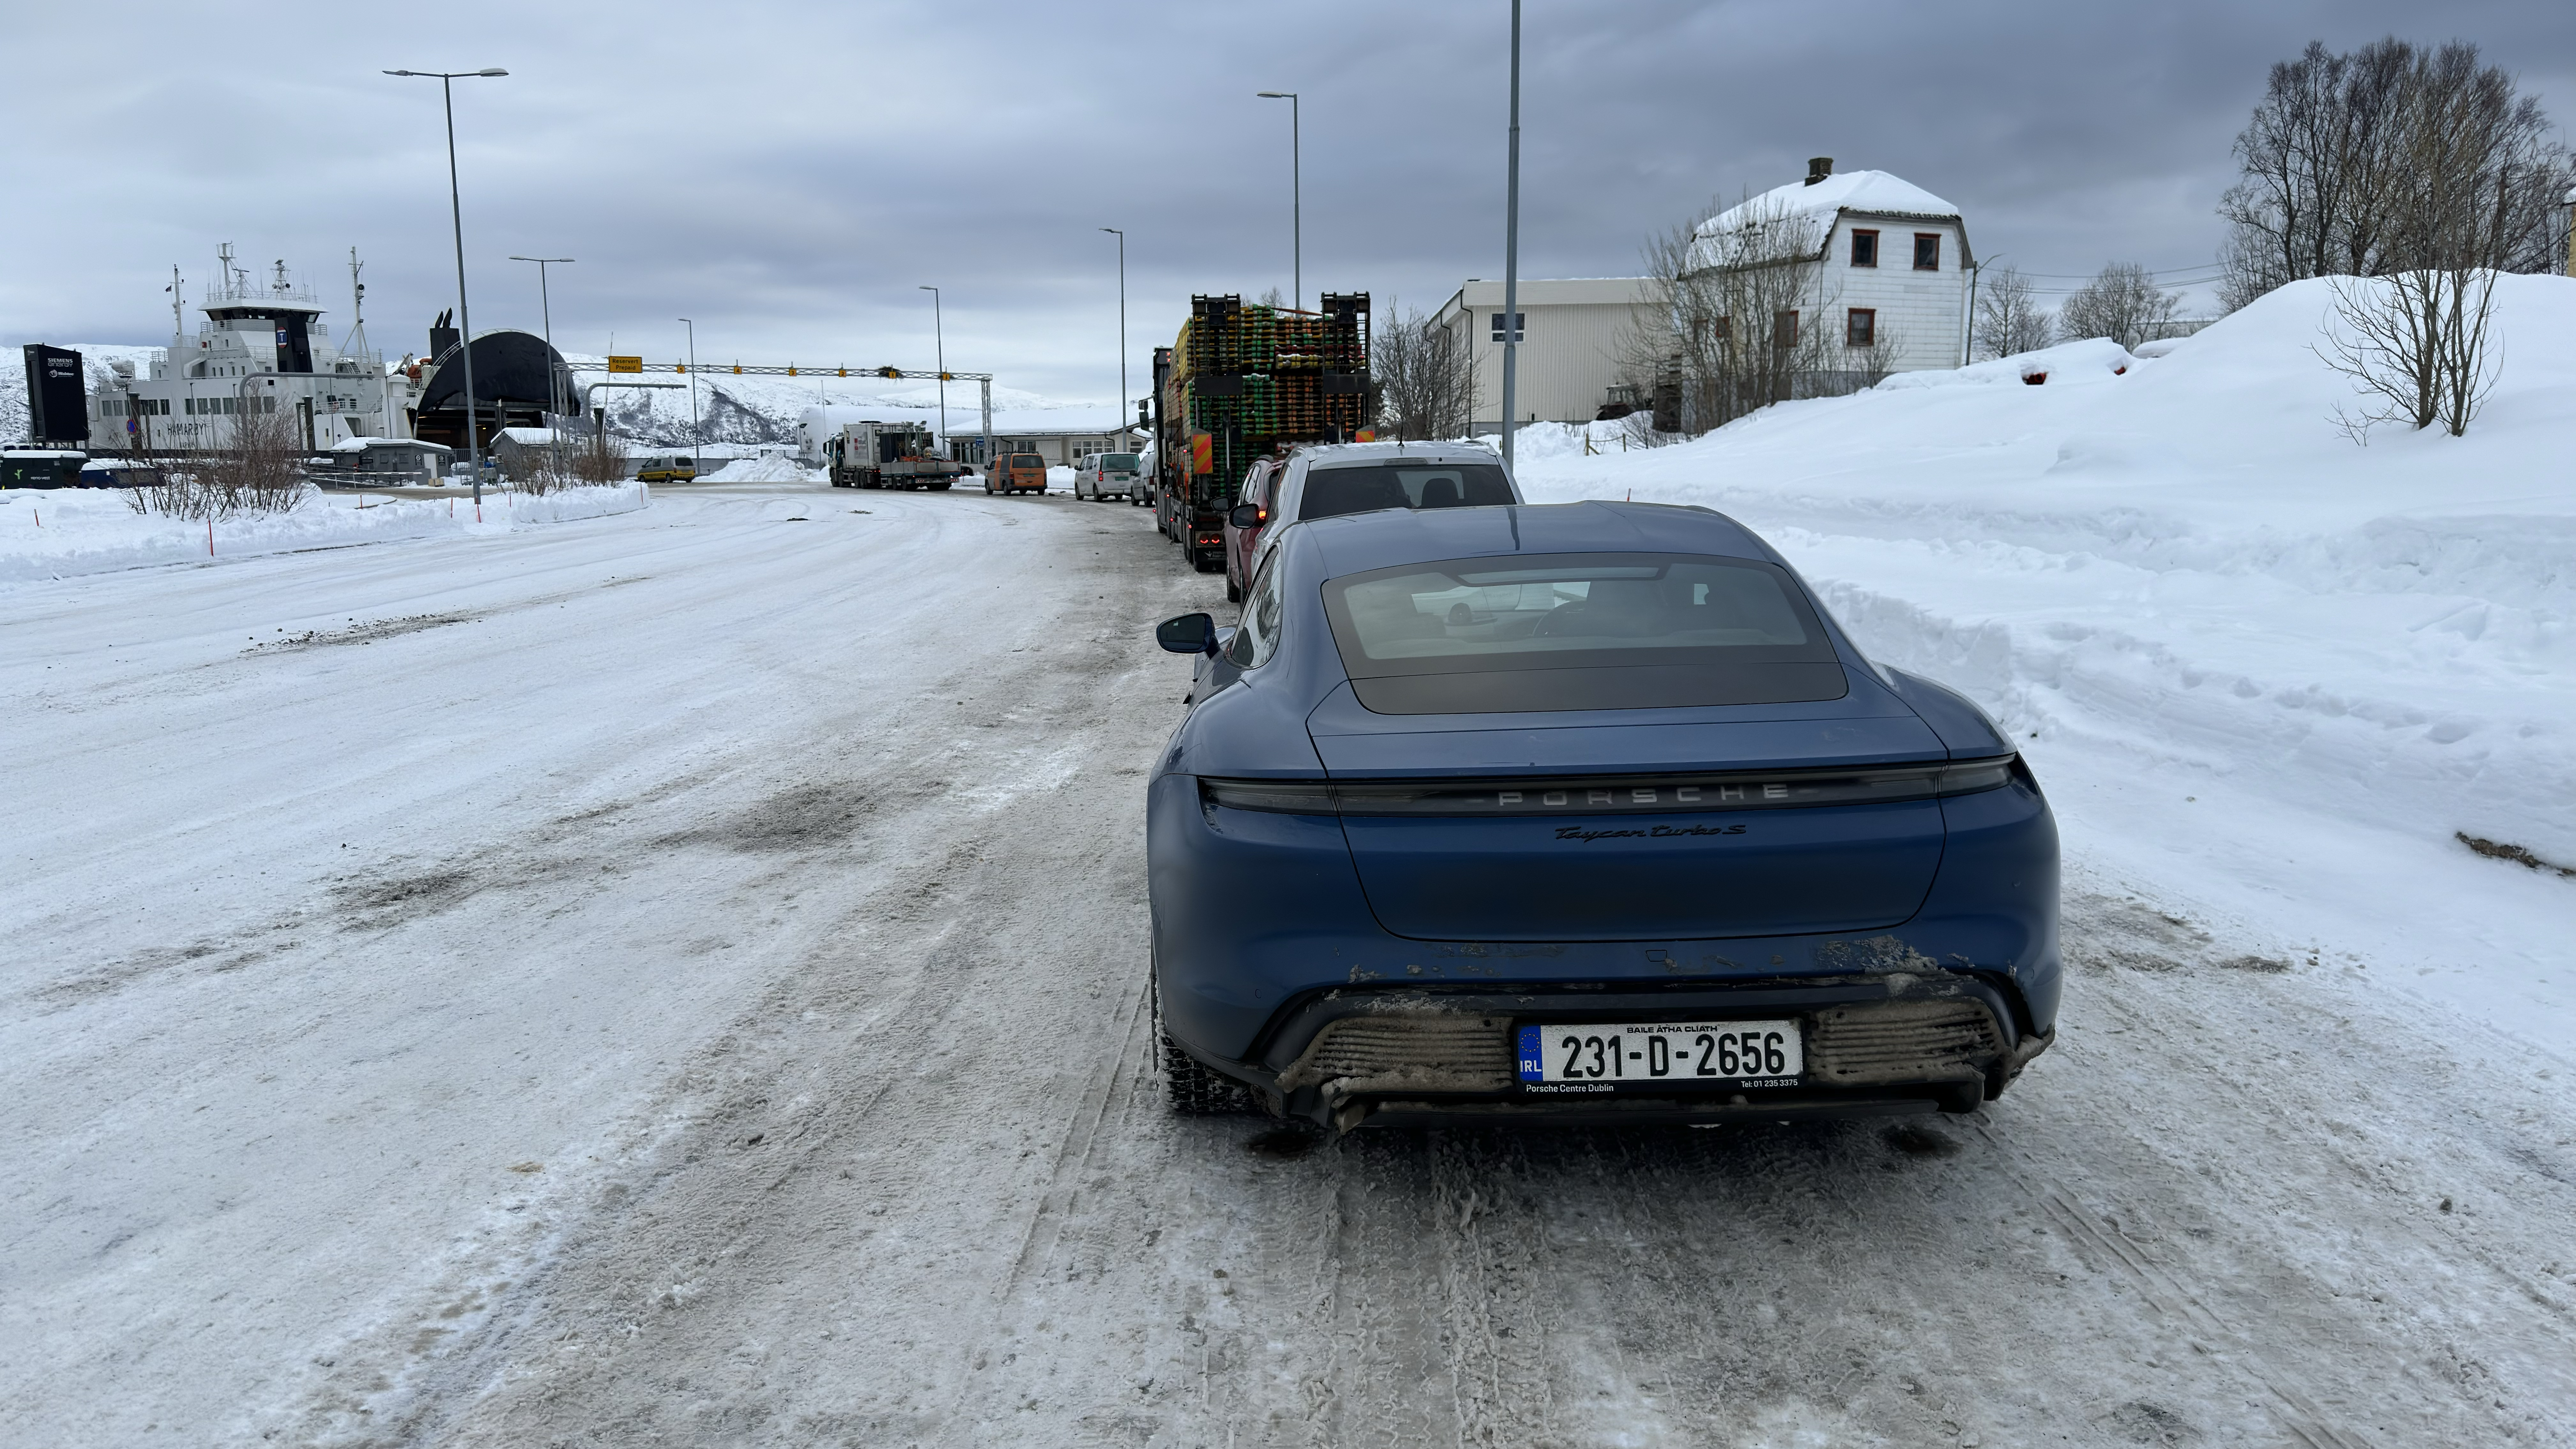 Porsche Taycan Taycan to Lofoten Islands, Norway (Follow Our Trip Report) 53537653670_e5dfae38c7_o